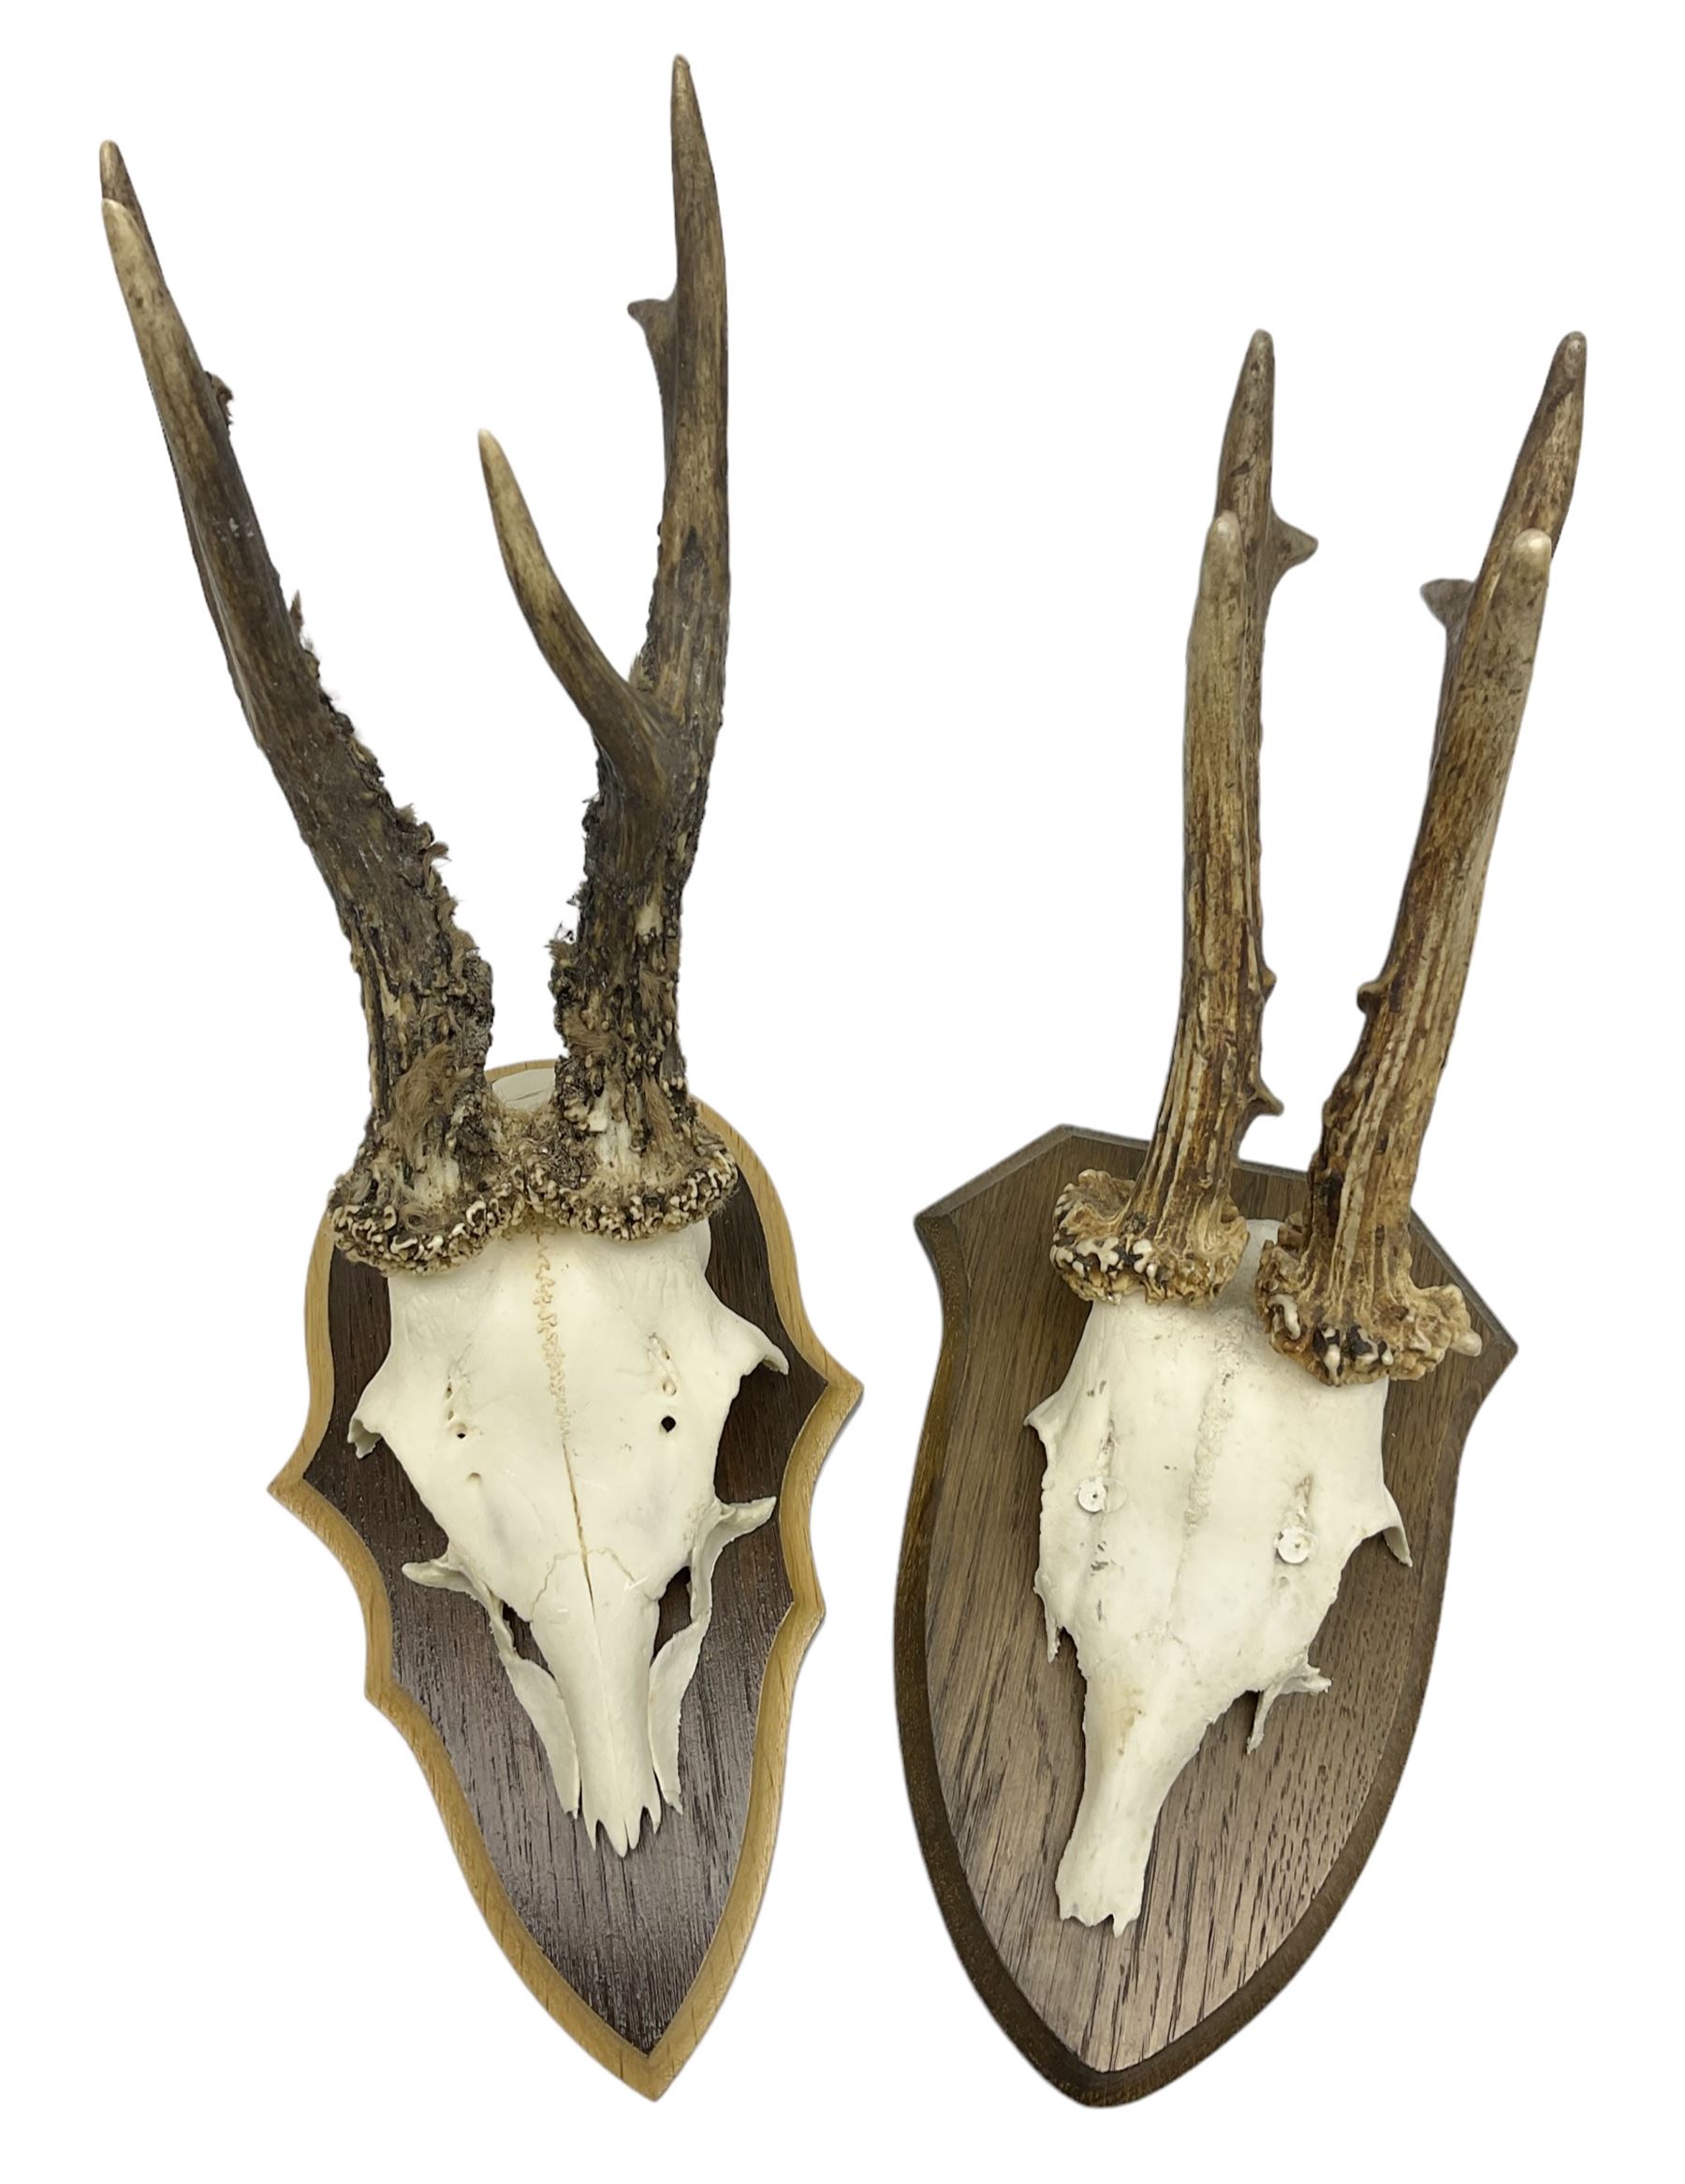 Antlers/Horns; Roe deer (Capreolus capreolus)